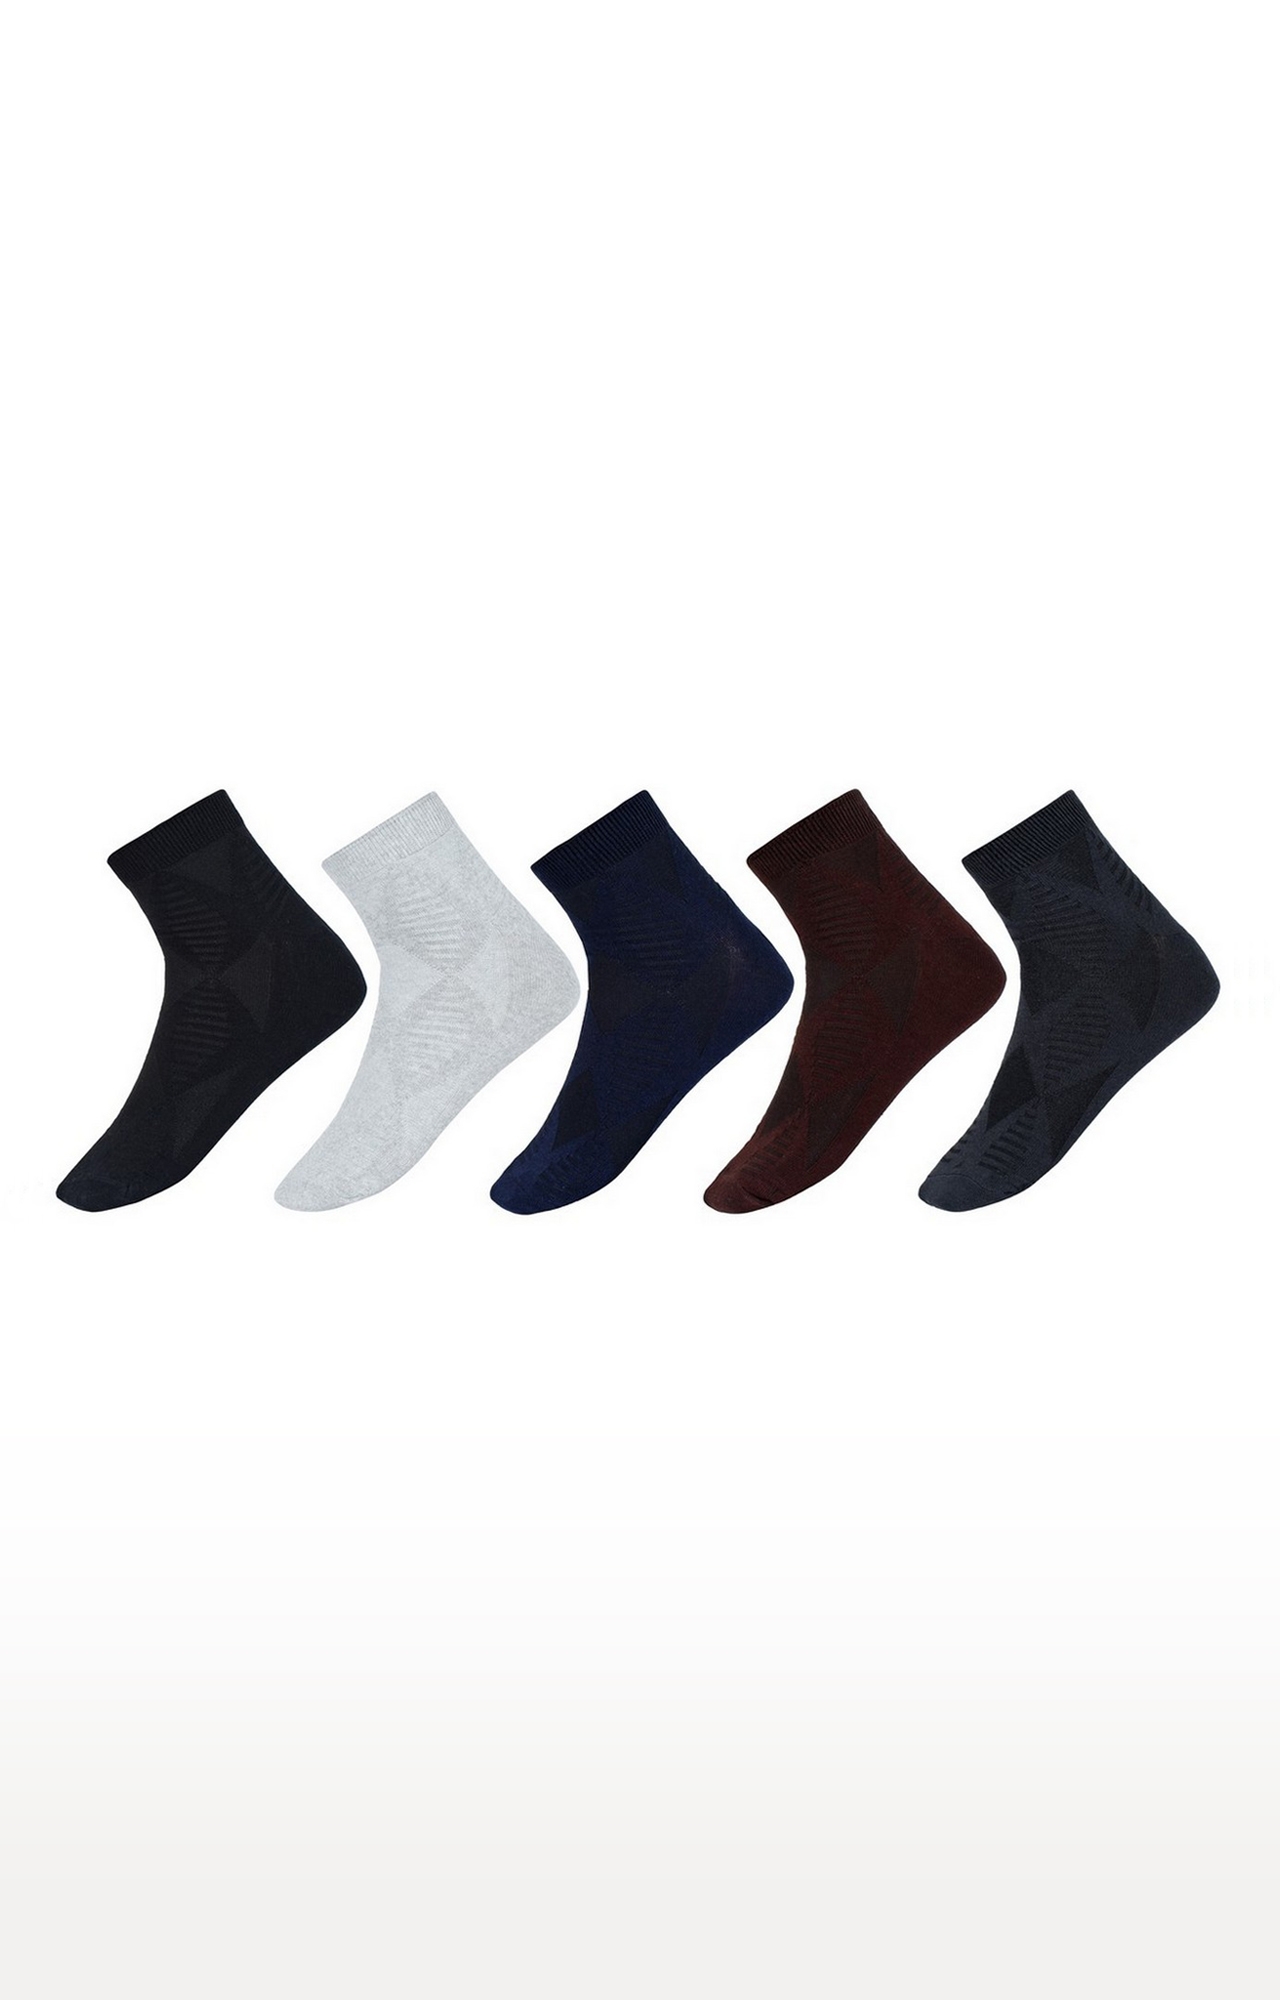 SIDEWOK | SIDEWOK Men Cotton Multicolour Socks - Pack of 5